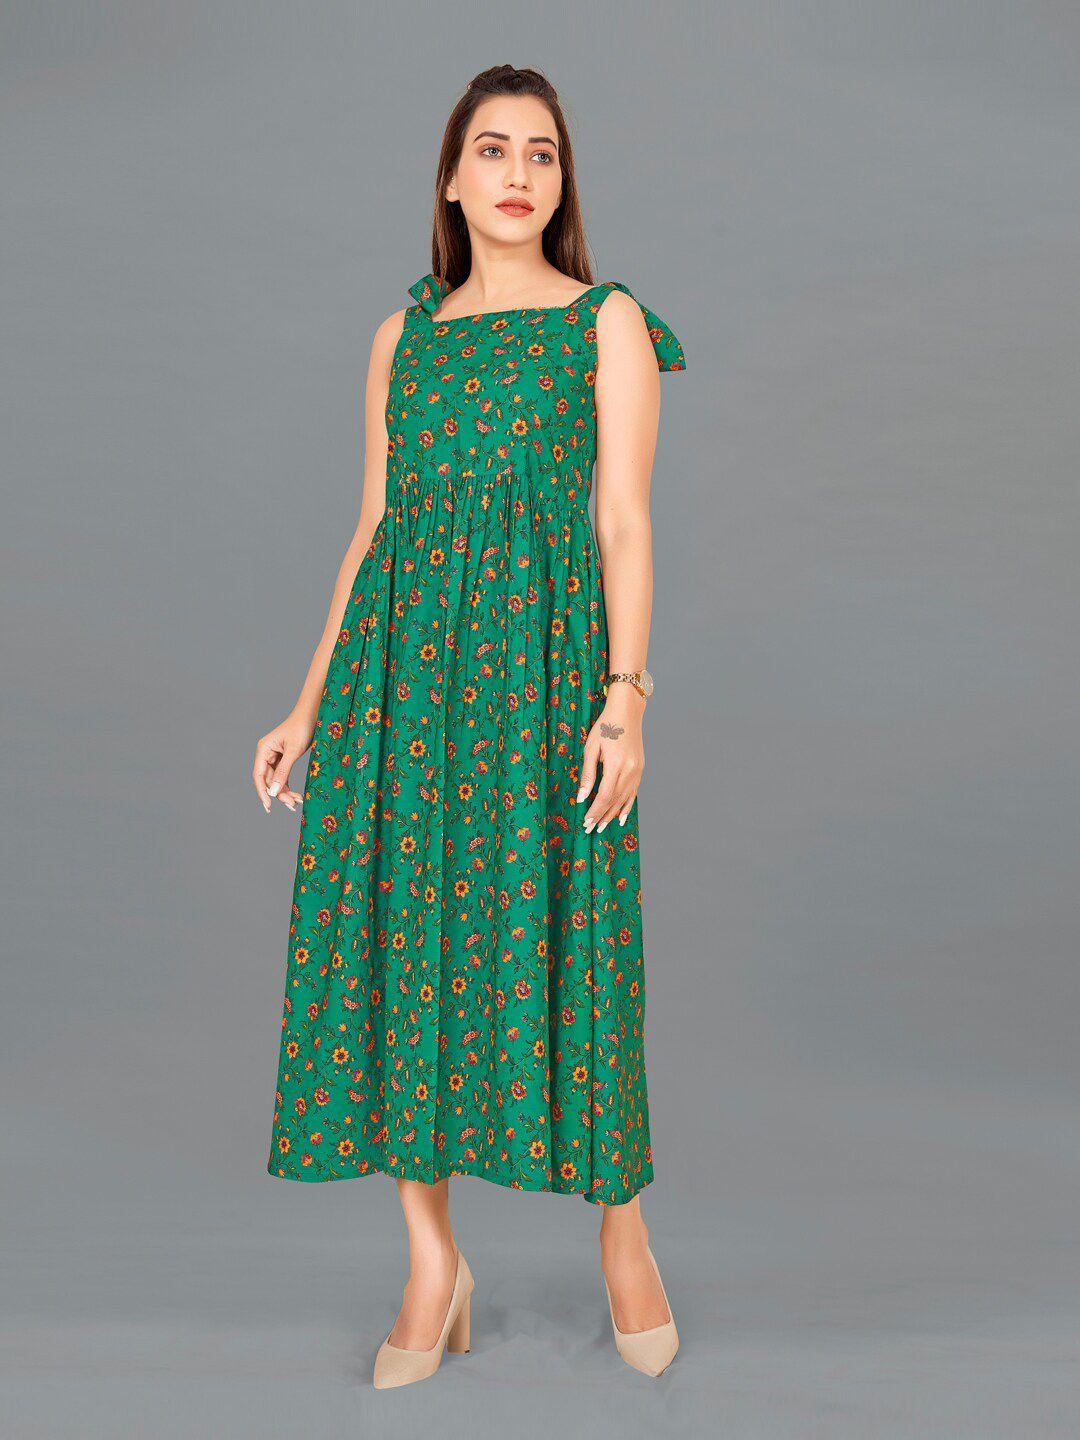 fashion dream women green floral printed maxi dress